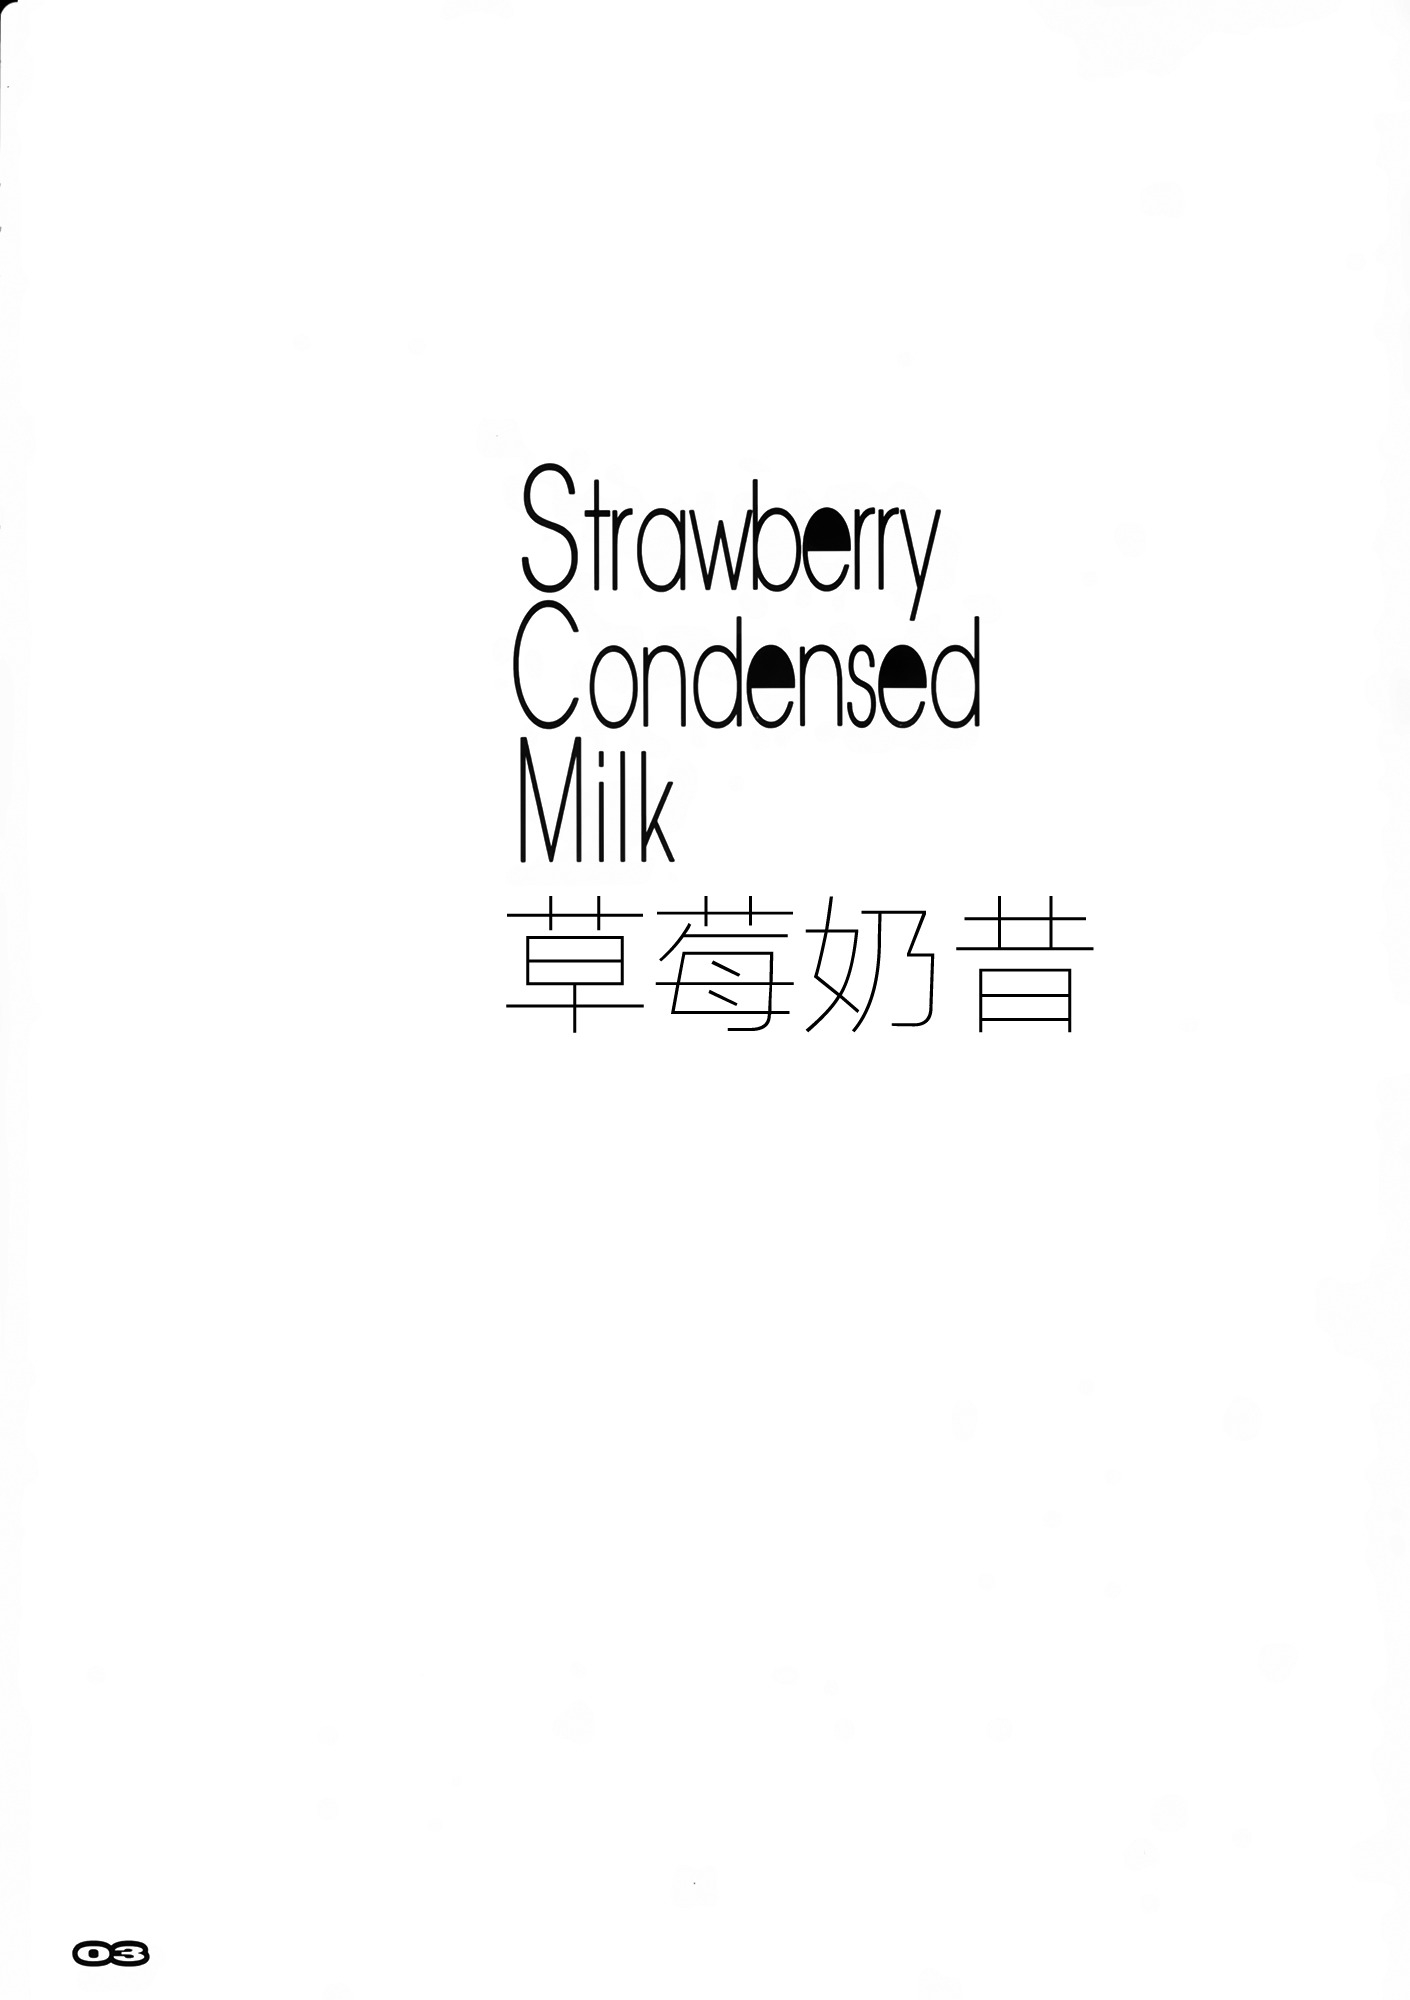 StrawberryCondenseMilk